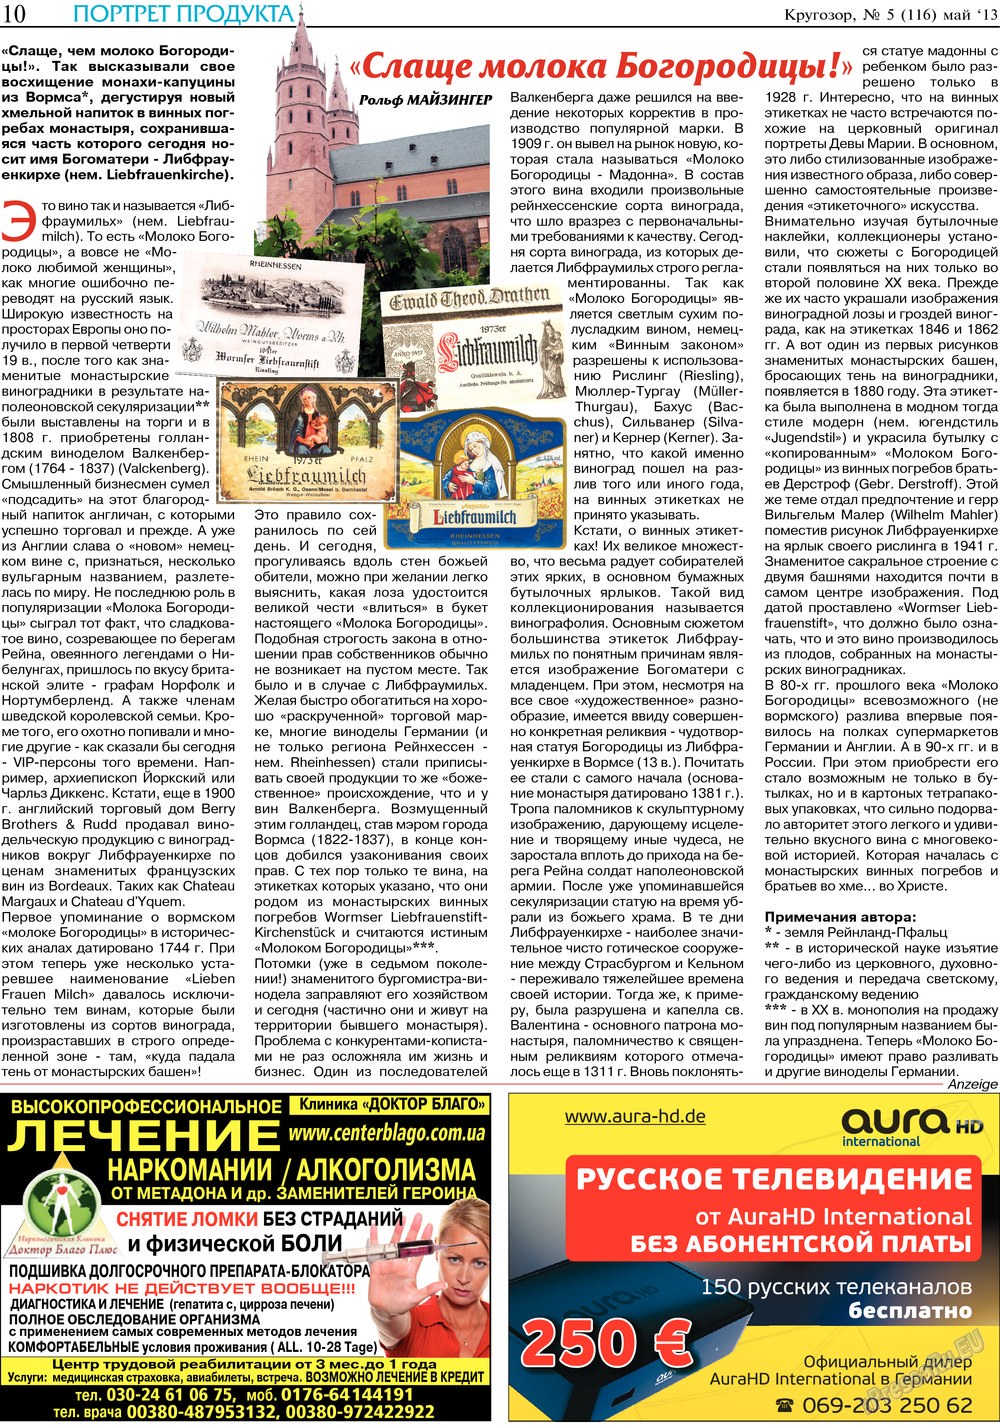 Кругозор, газета. 2013 №5 стр.10